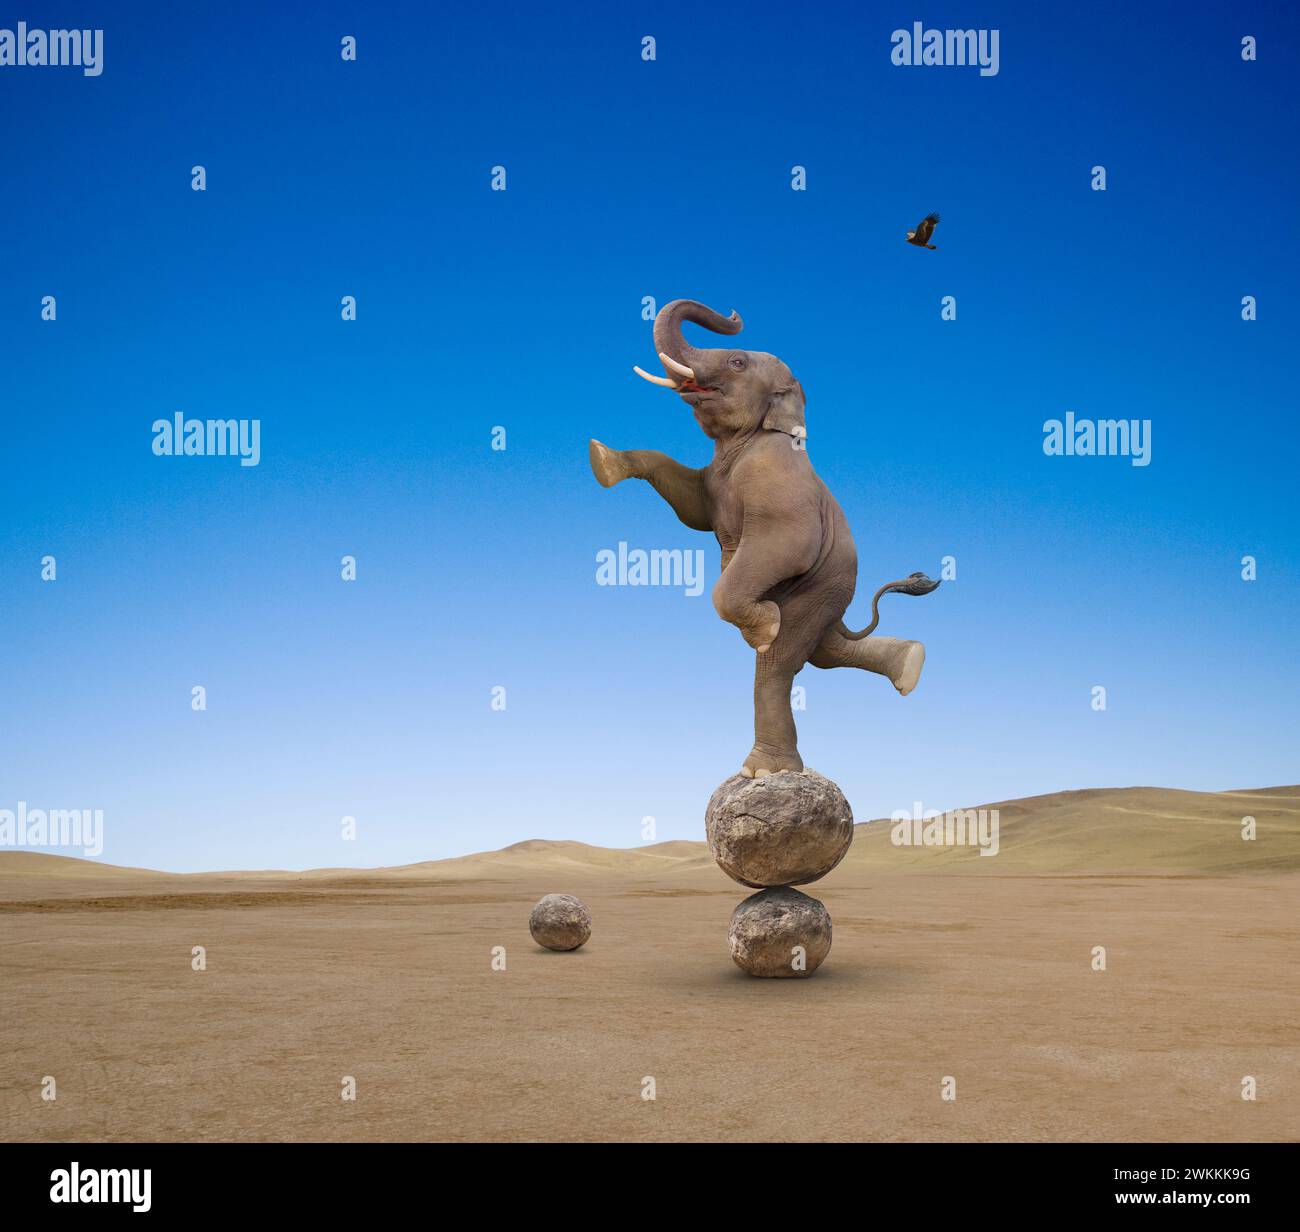 Un éléphant se tient sur un pied et se balance sur une pile de rochers dans une métaphore visuelle drôle pour toute grande entreprise qui reste agile et agile. Banque D'Images